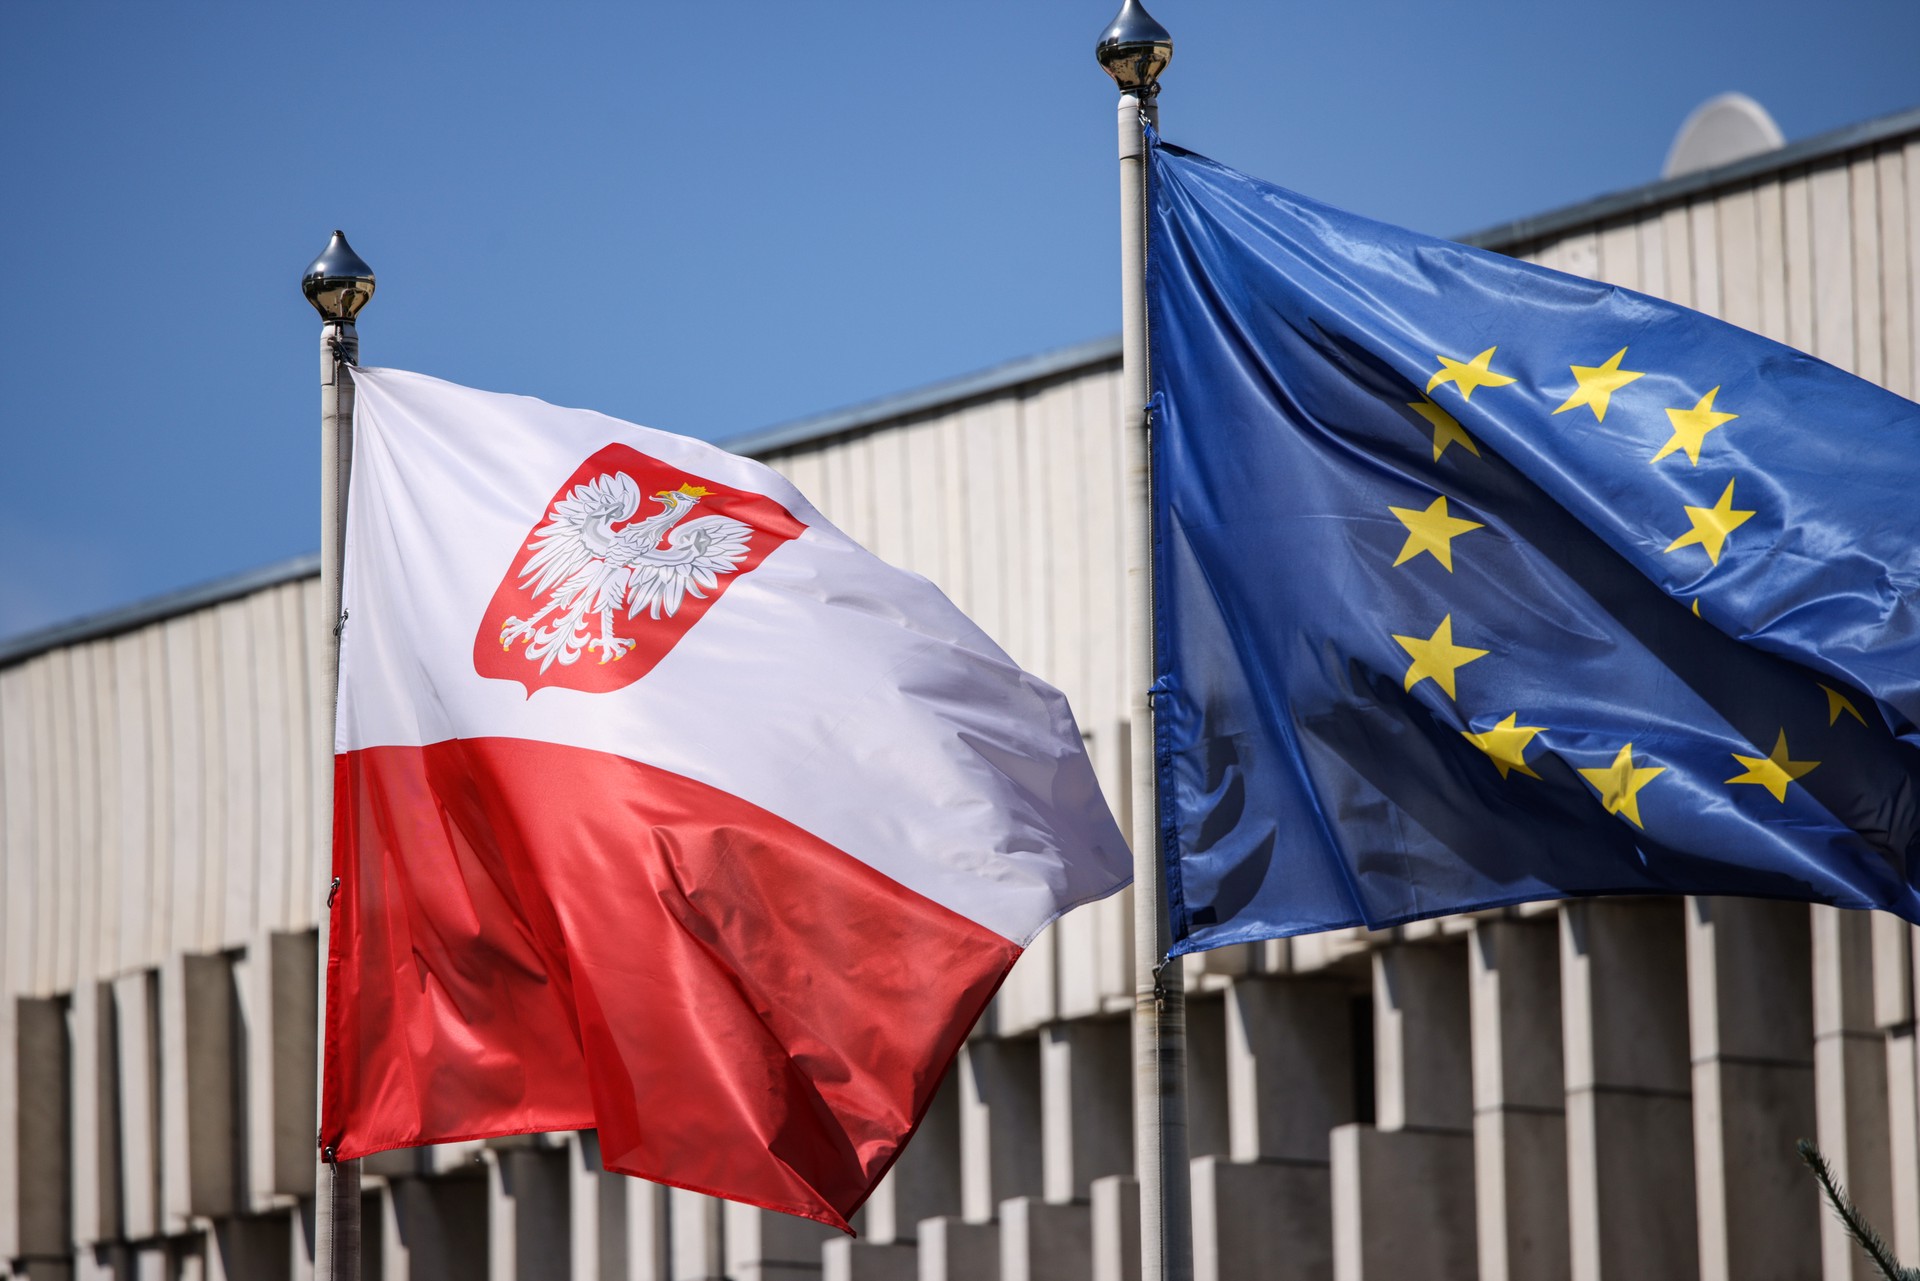 Вот такая «Независимость»: сможет ли новая партия Польши вывести страну из ЕС и подчинить её США